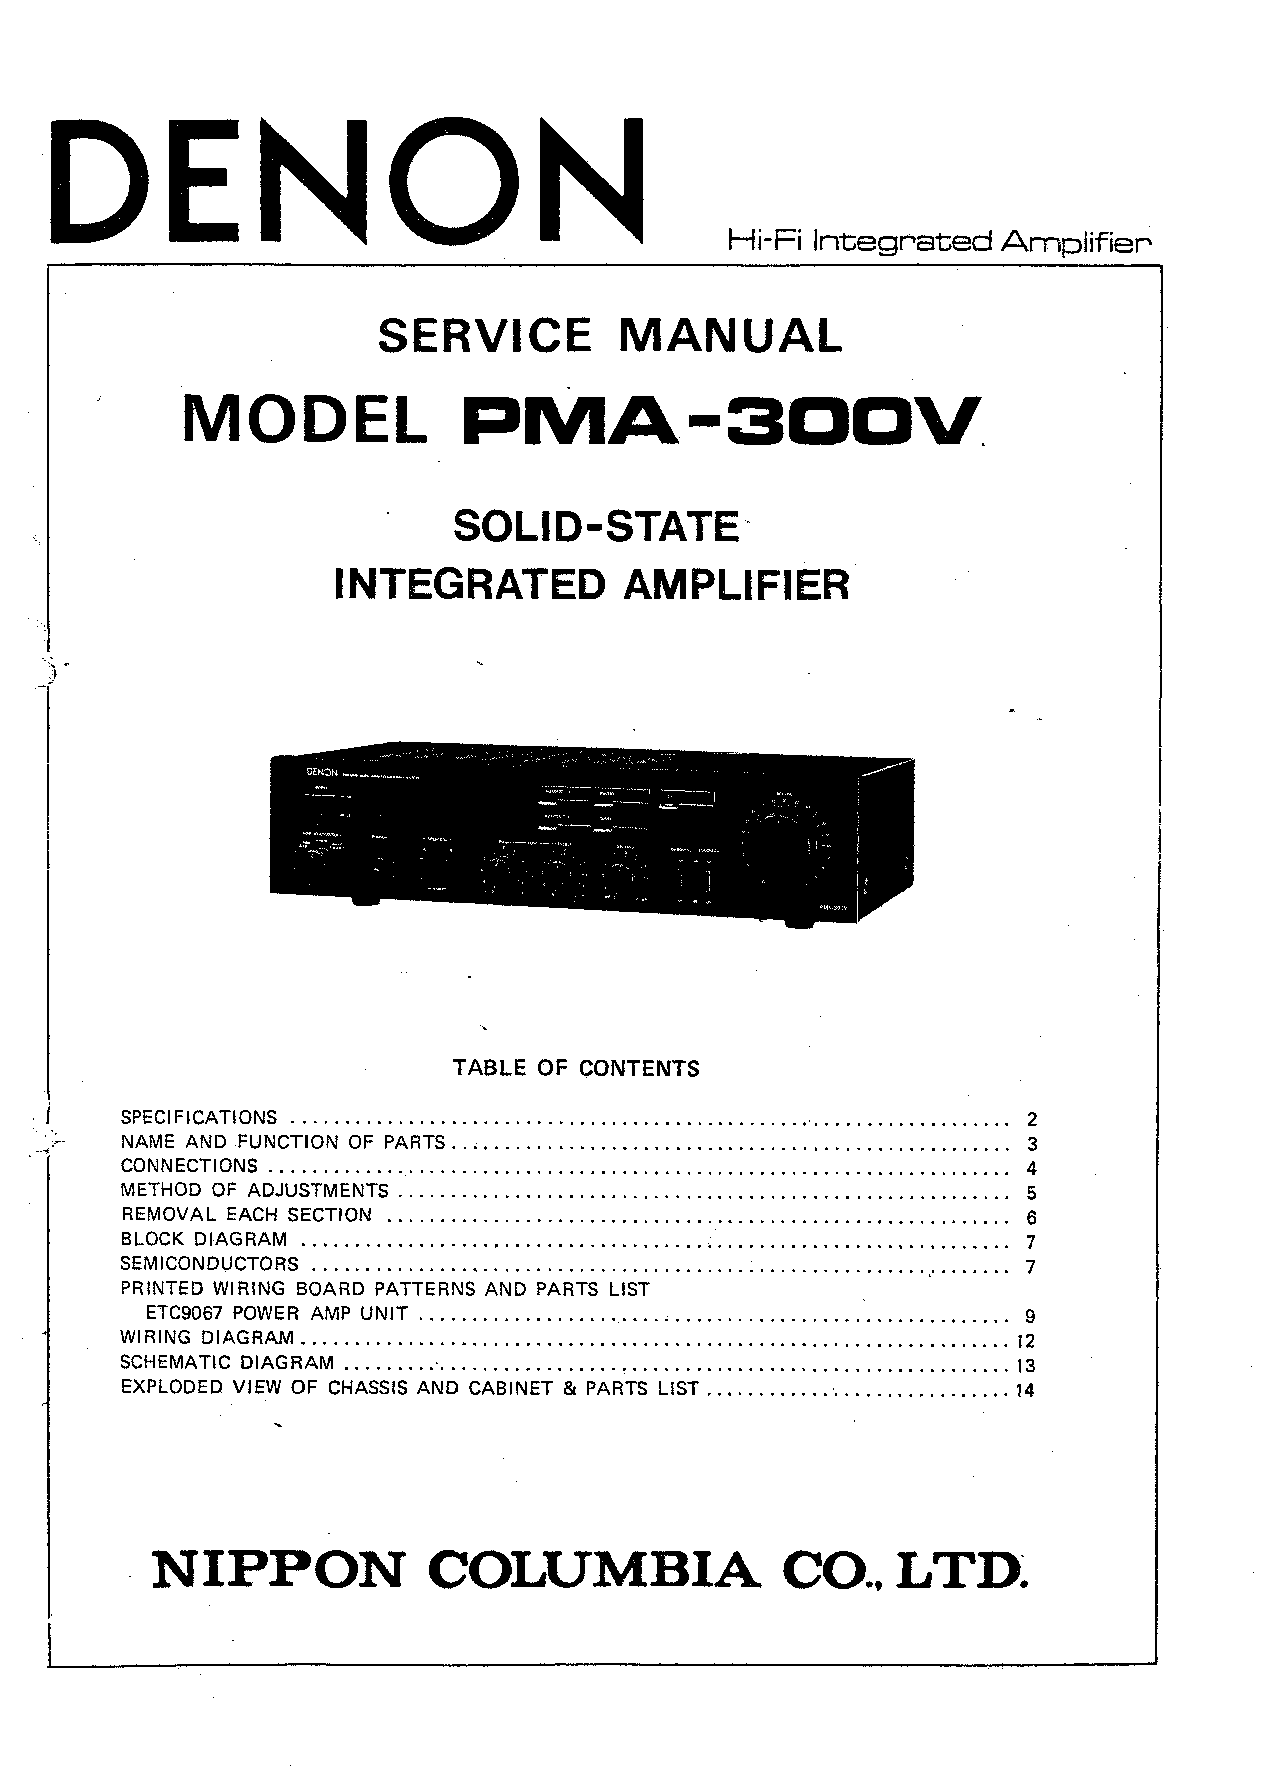 Denon PMA-300V Service Manual